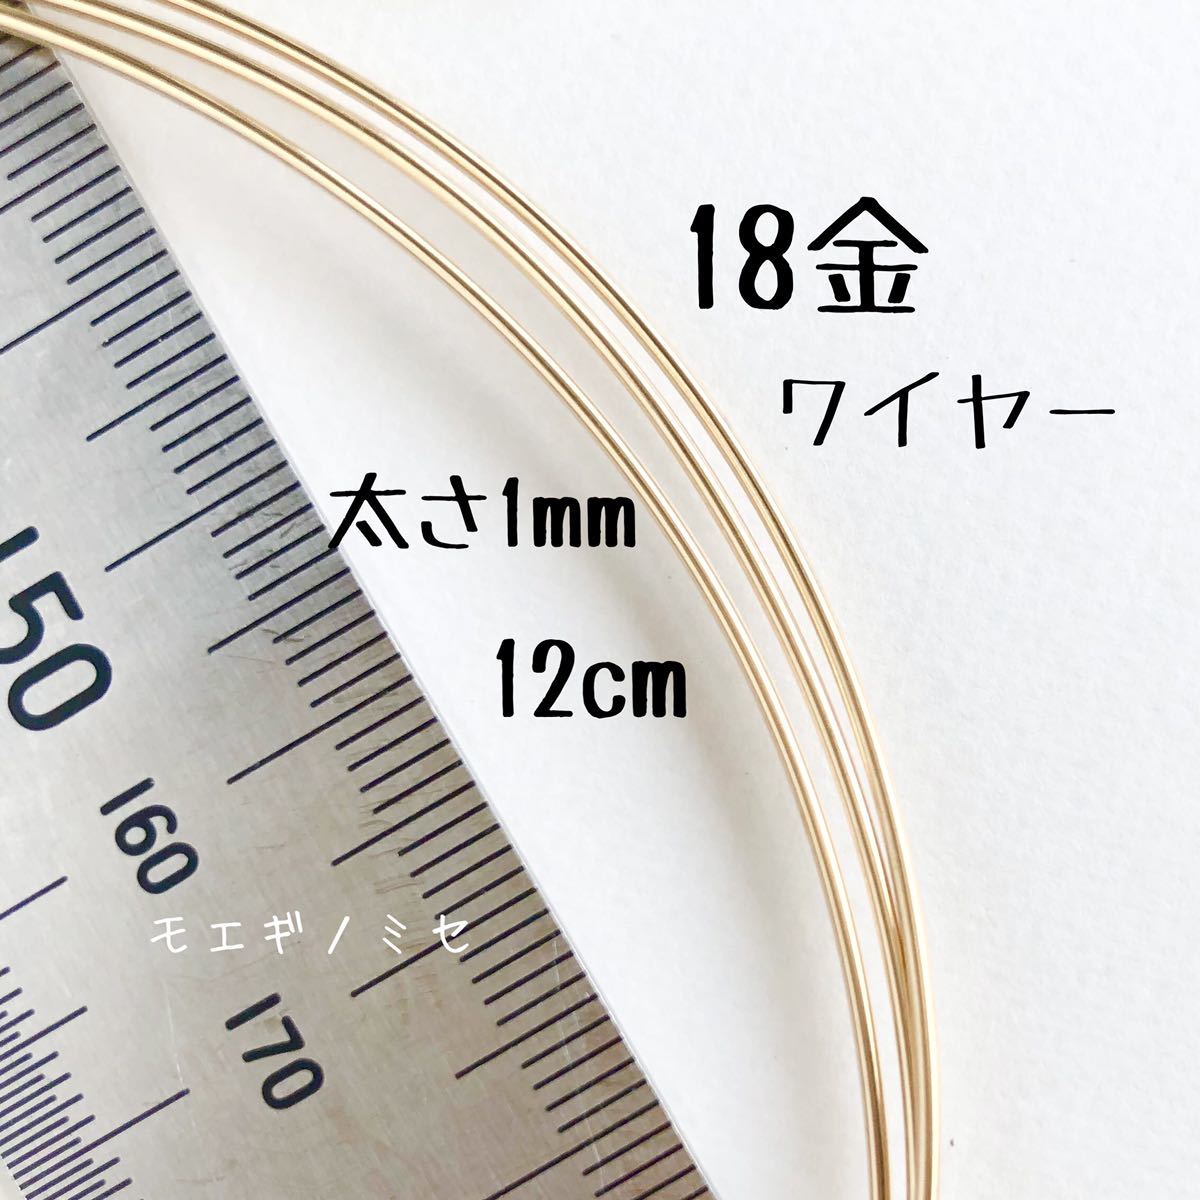 18K 1mm 线材 12cm 切割出售 K18 圆线材料 日本制造 手工配件材料 圆线切割出售, 手工, 手工艺品, 珠饰, 金属部件